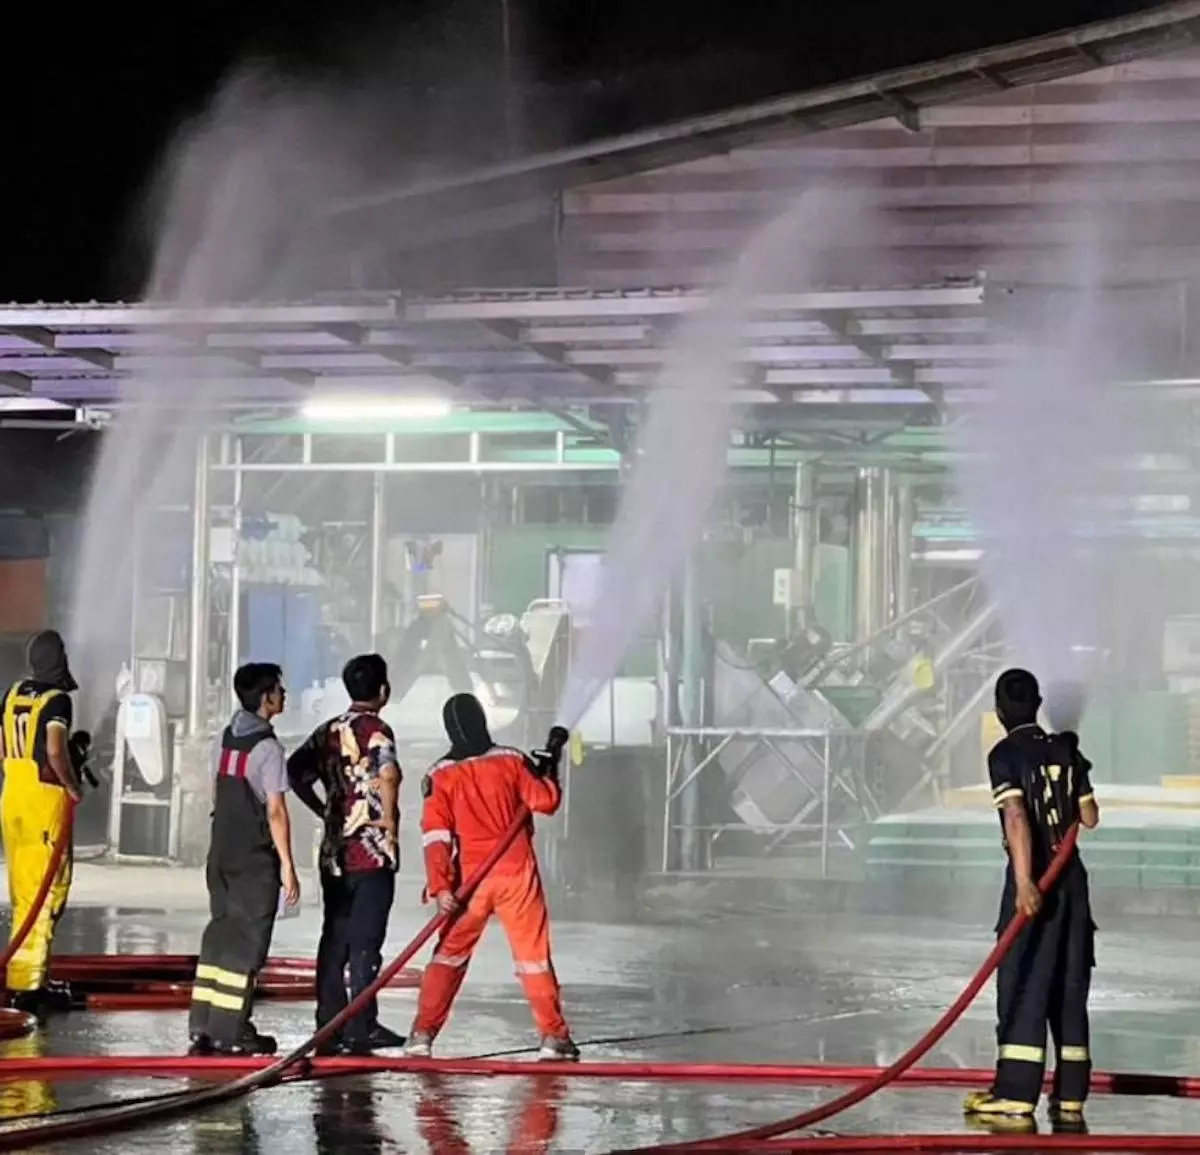 К ликвидации последствий происшествия на заводе привлечены пожарные из Паттайи